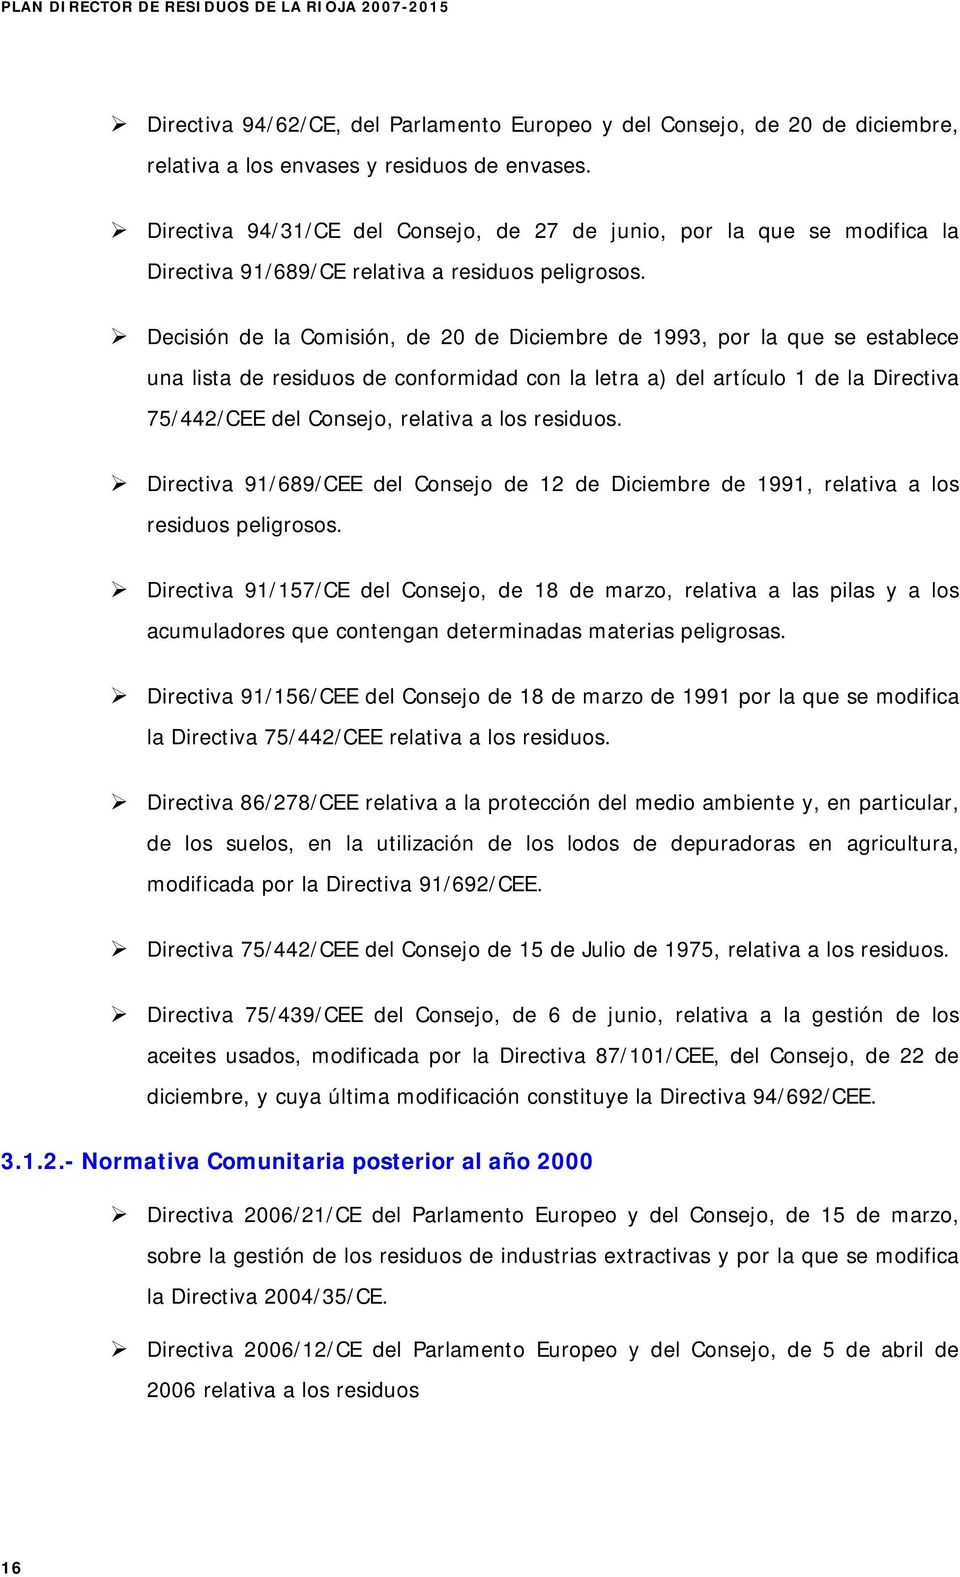 Decisión de la Comisión, de 20 de Diciembre de 1993, por la que se establece una lista de residuos de conformidad con la letra a) del artículo 1 de la Directiva 75/442/CEE del Consejo, relativa a los